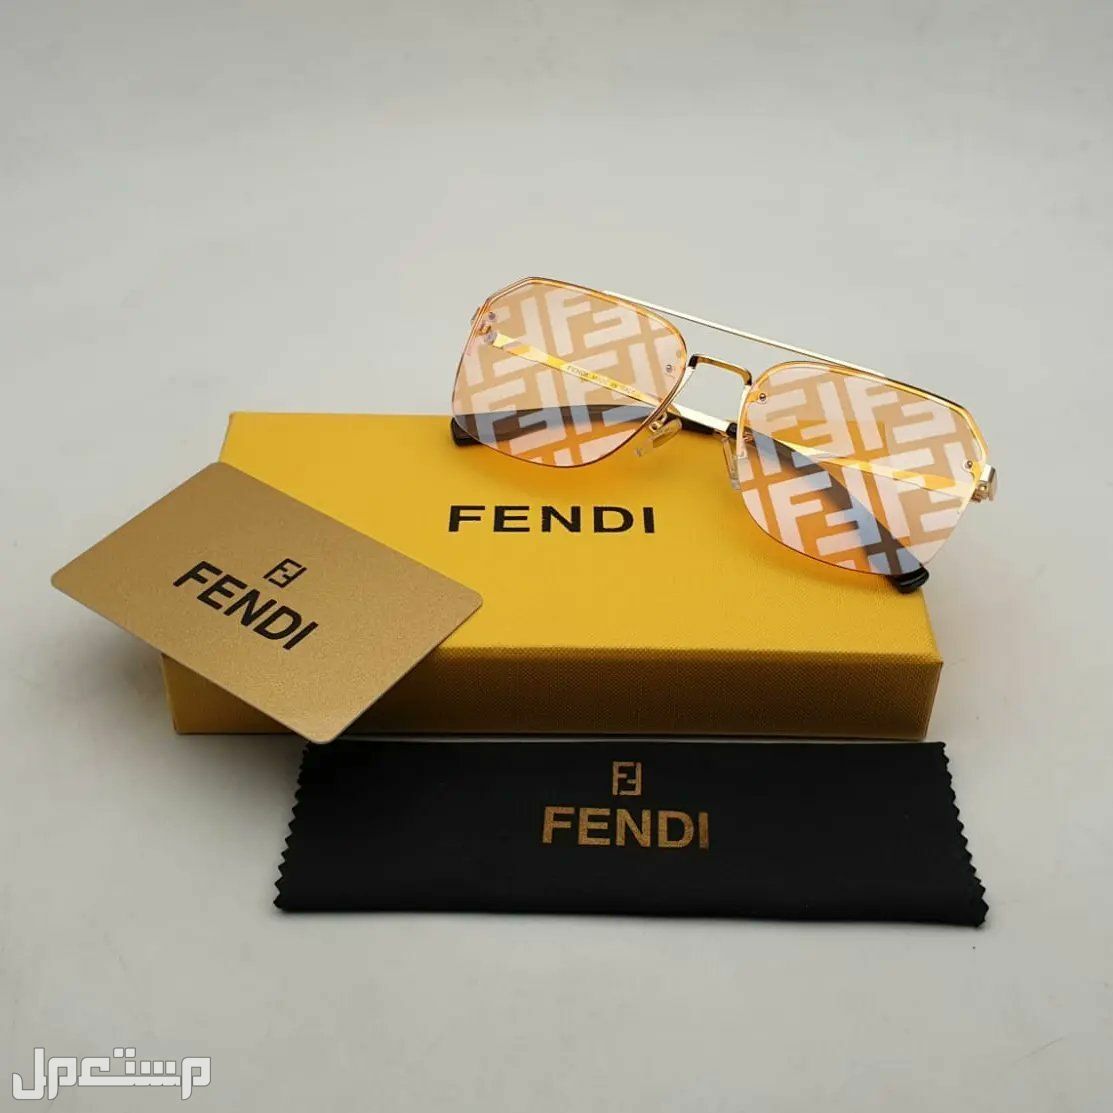 نظارات فندي Fendi النسائية تعرف على مواصفاتها وأسعارها كاملة في الجزائر فندي مميزة